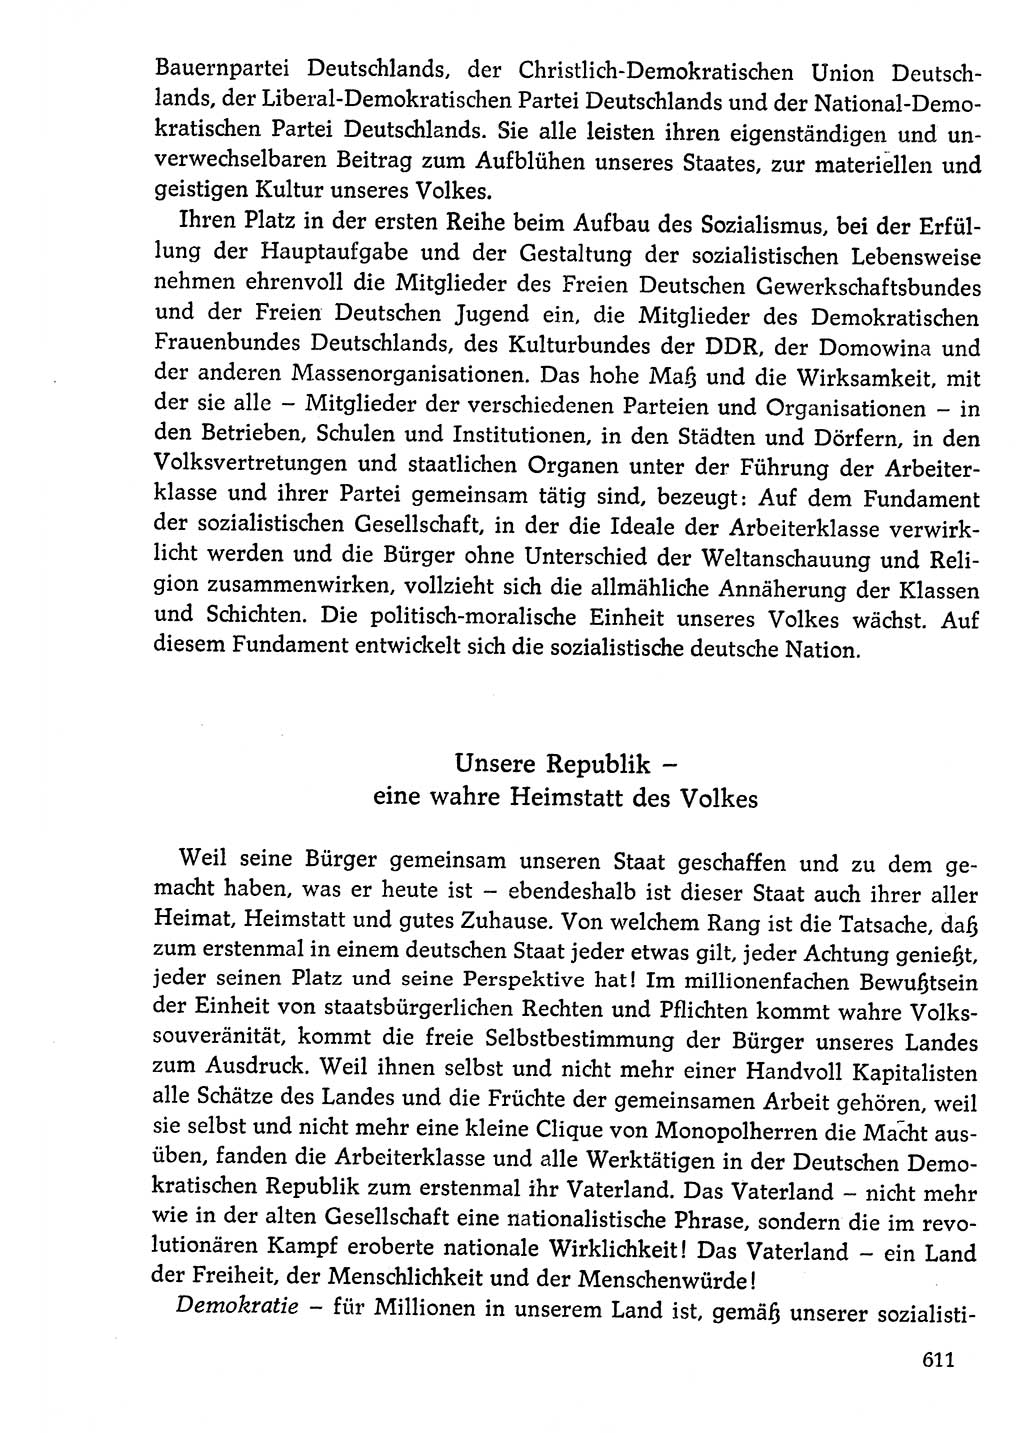 Dokumente der Sozialistischen Einheitspartei Deutschlands (SED) [Deutsche Demokratische Republik (DDR)] 1976-1977, Seite 611 (Dok. SED DDR 1976-1977, S. 611)